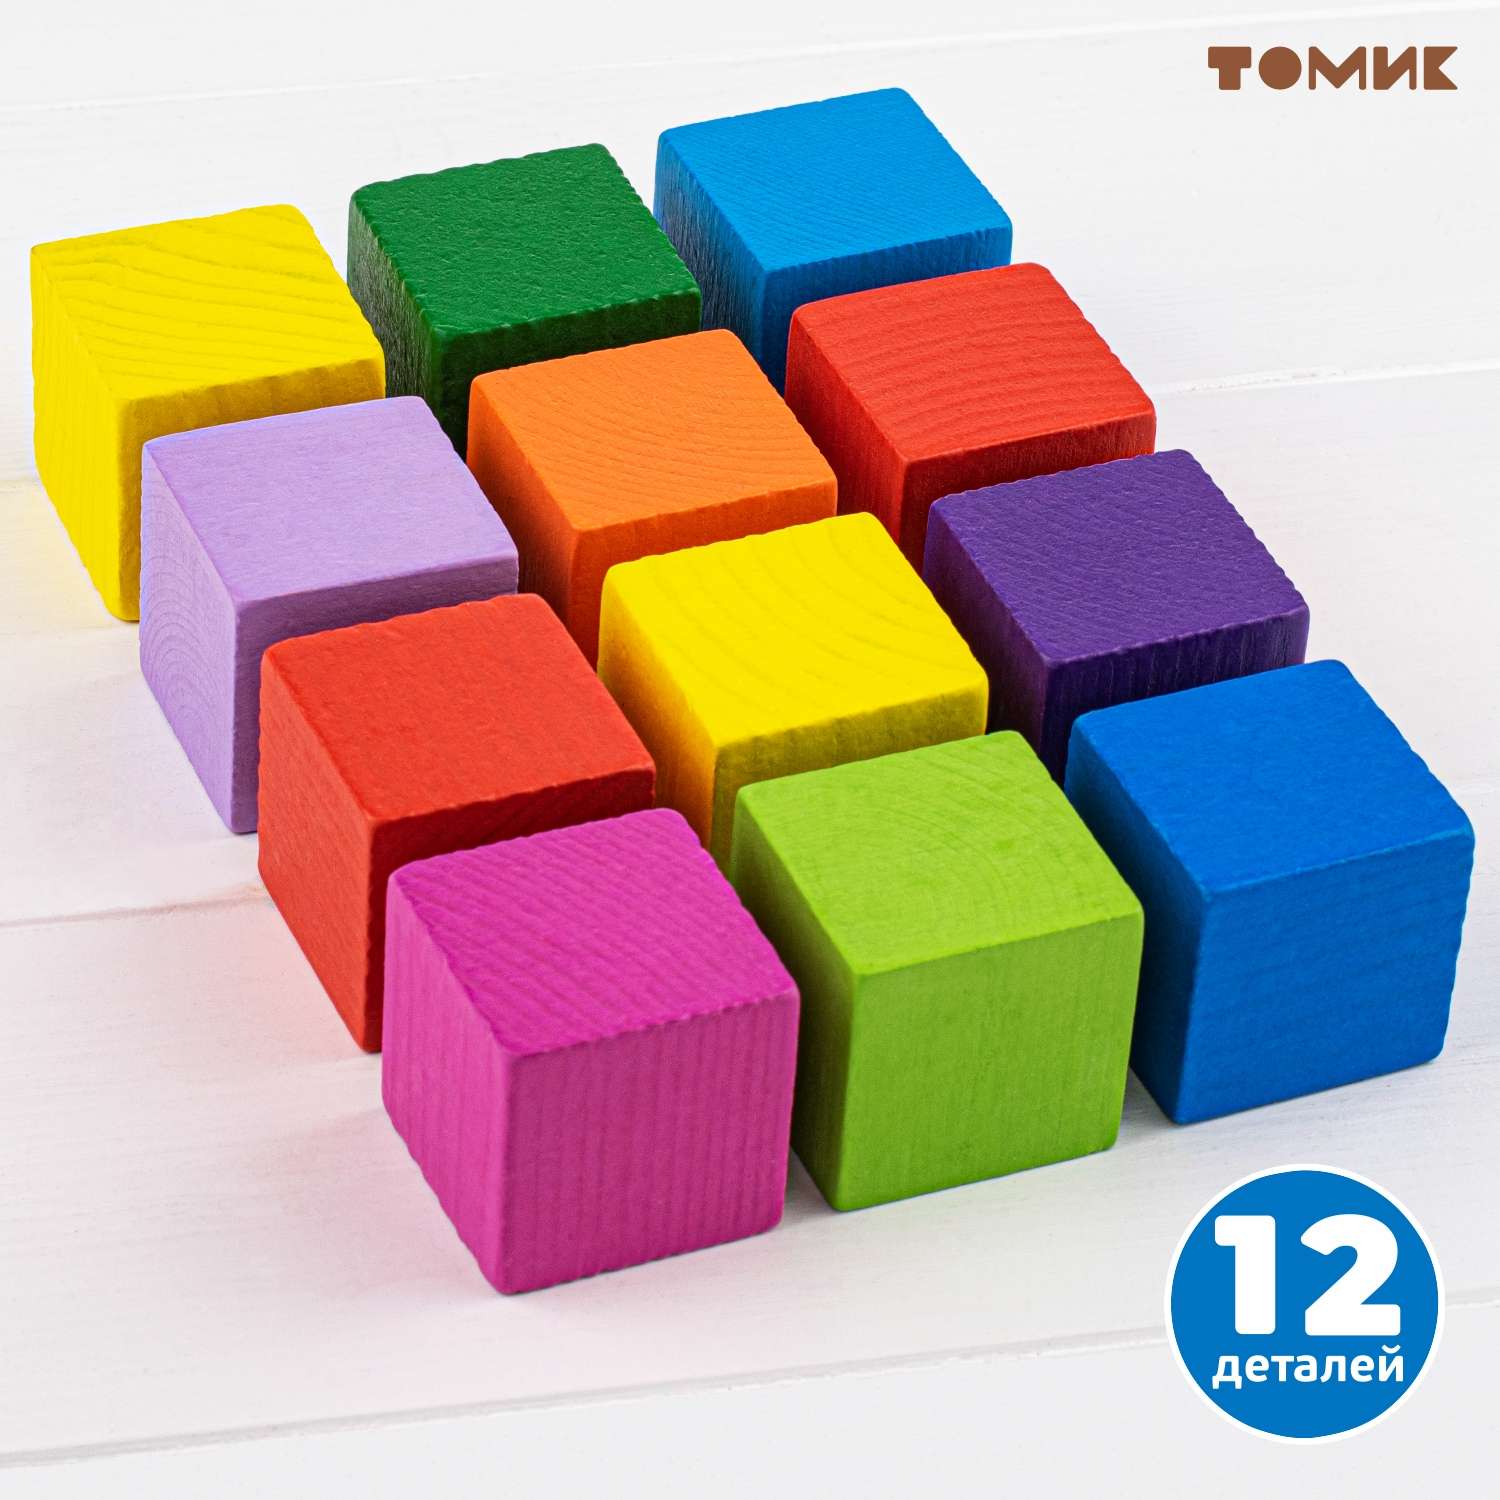 Кубики для детей Томик Цветные 12 шт - фото 2